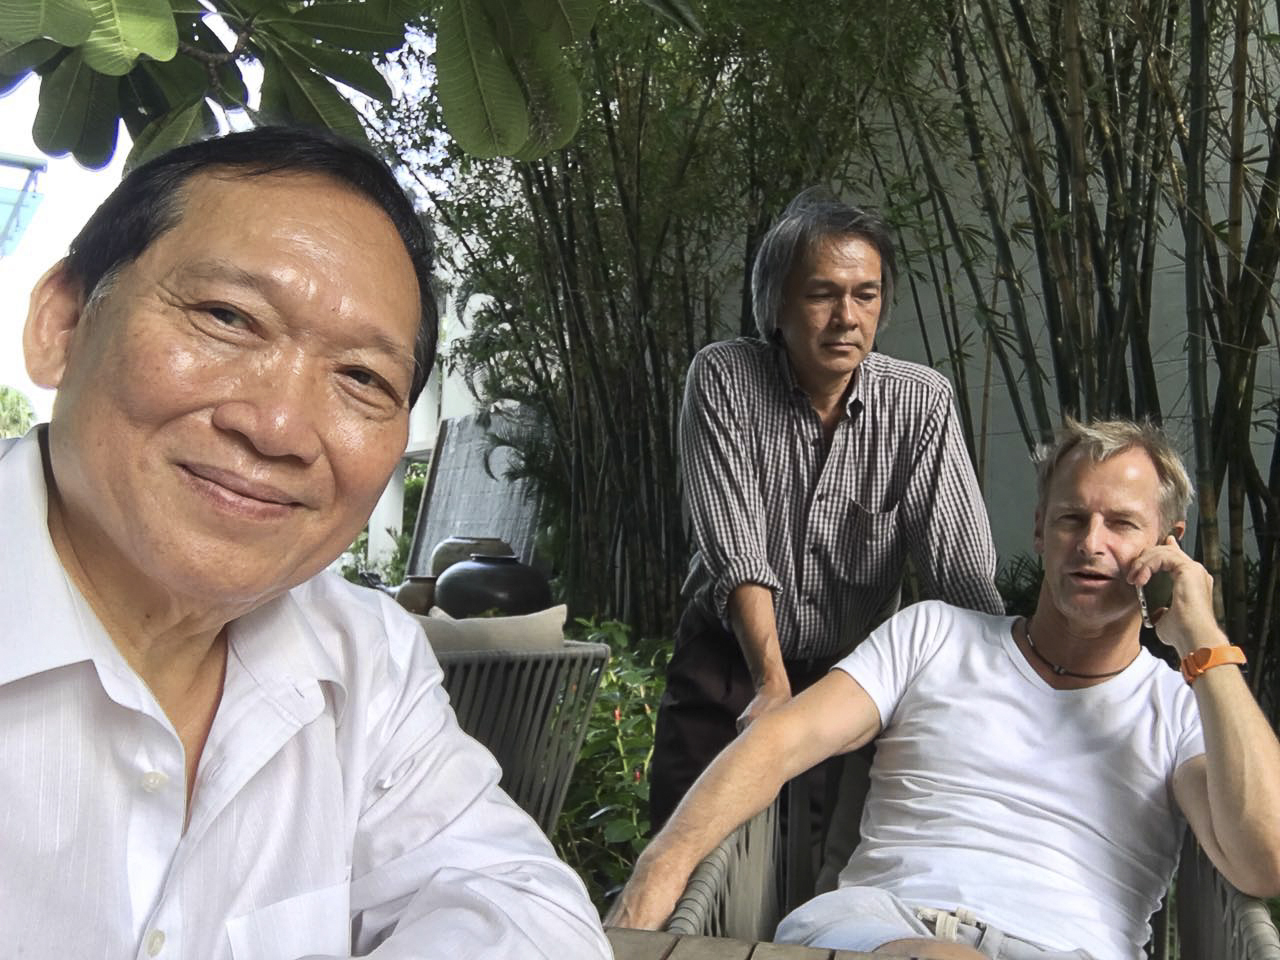 Unser Country Manager, Khun Tira, links, ist wie mein Pi Chai - wie ein großer Bruder für mich